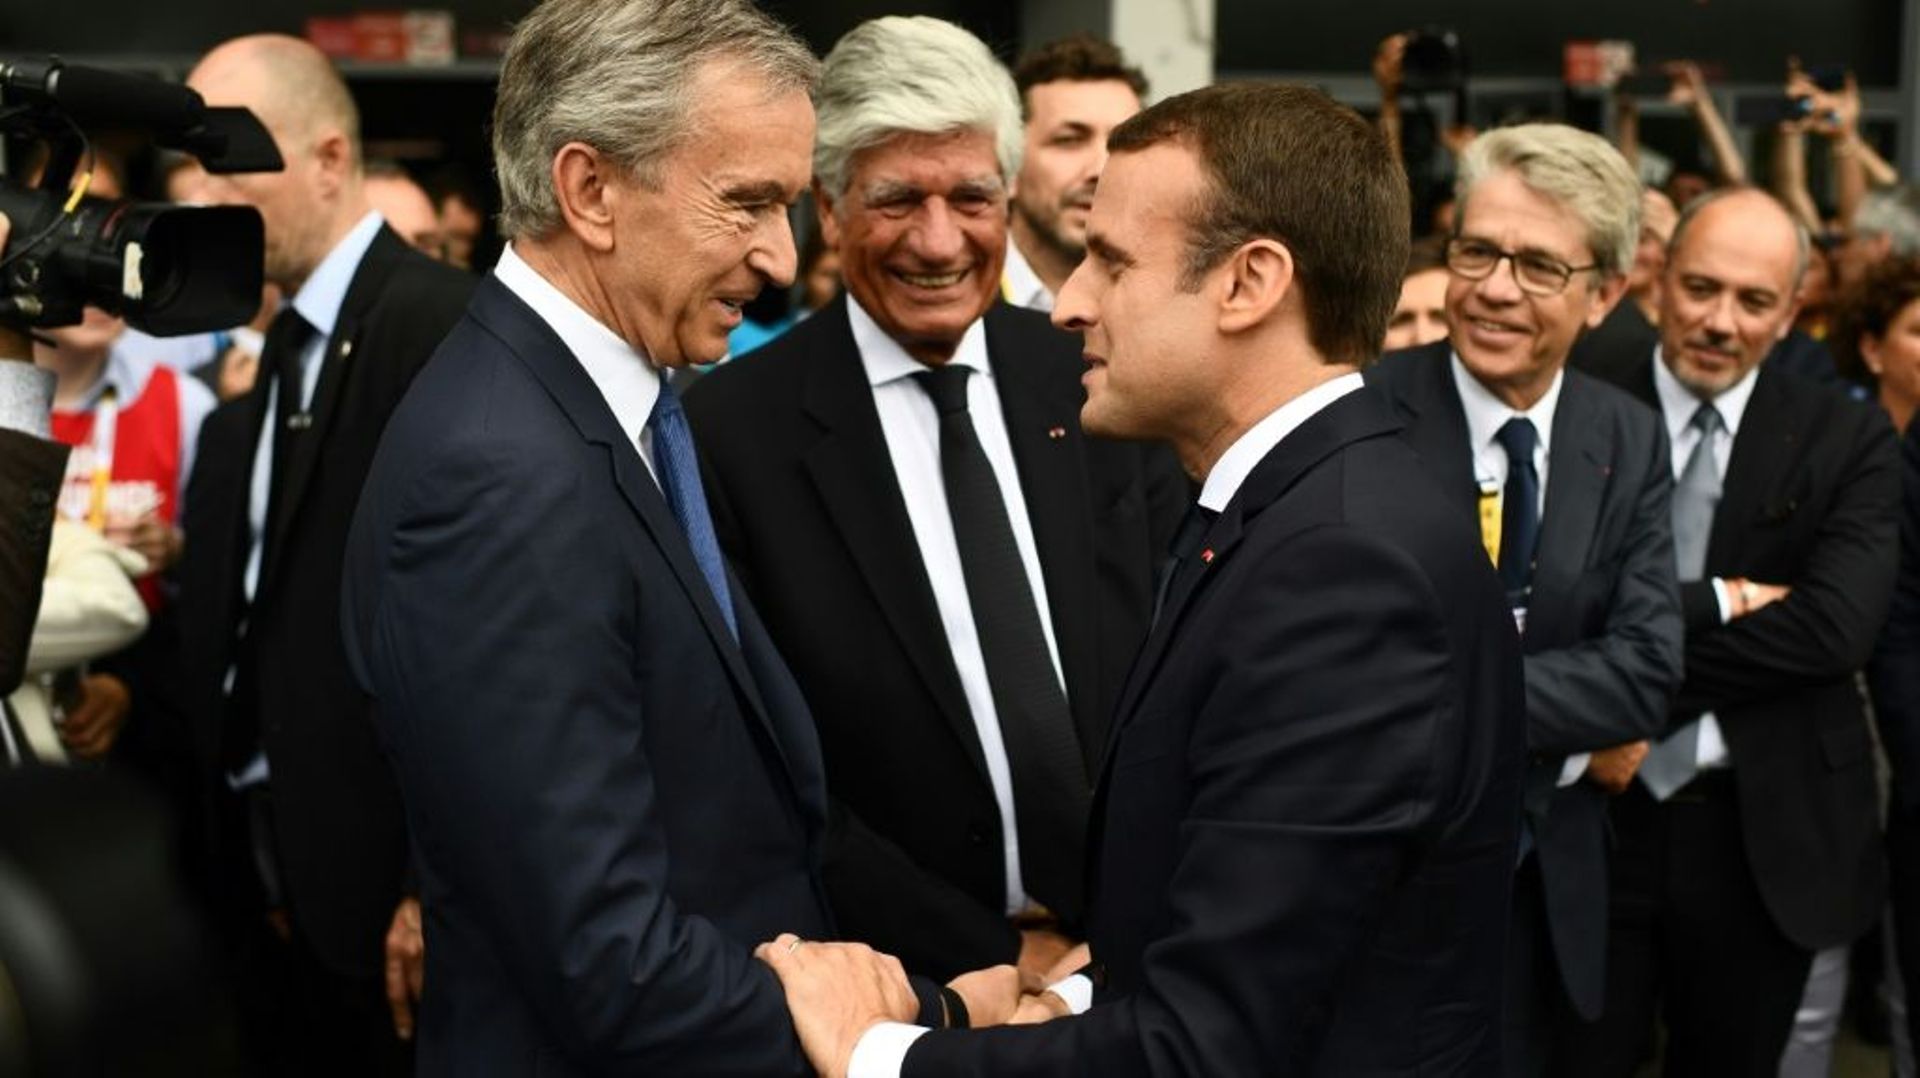 Bernard Arnault, l'indéboulonnable première fortune de France - Challenges